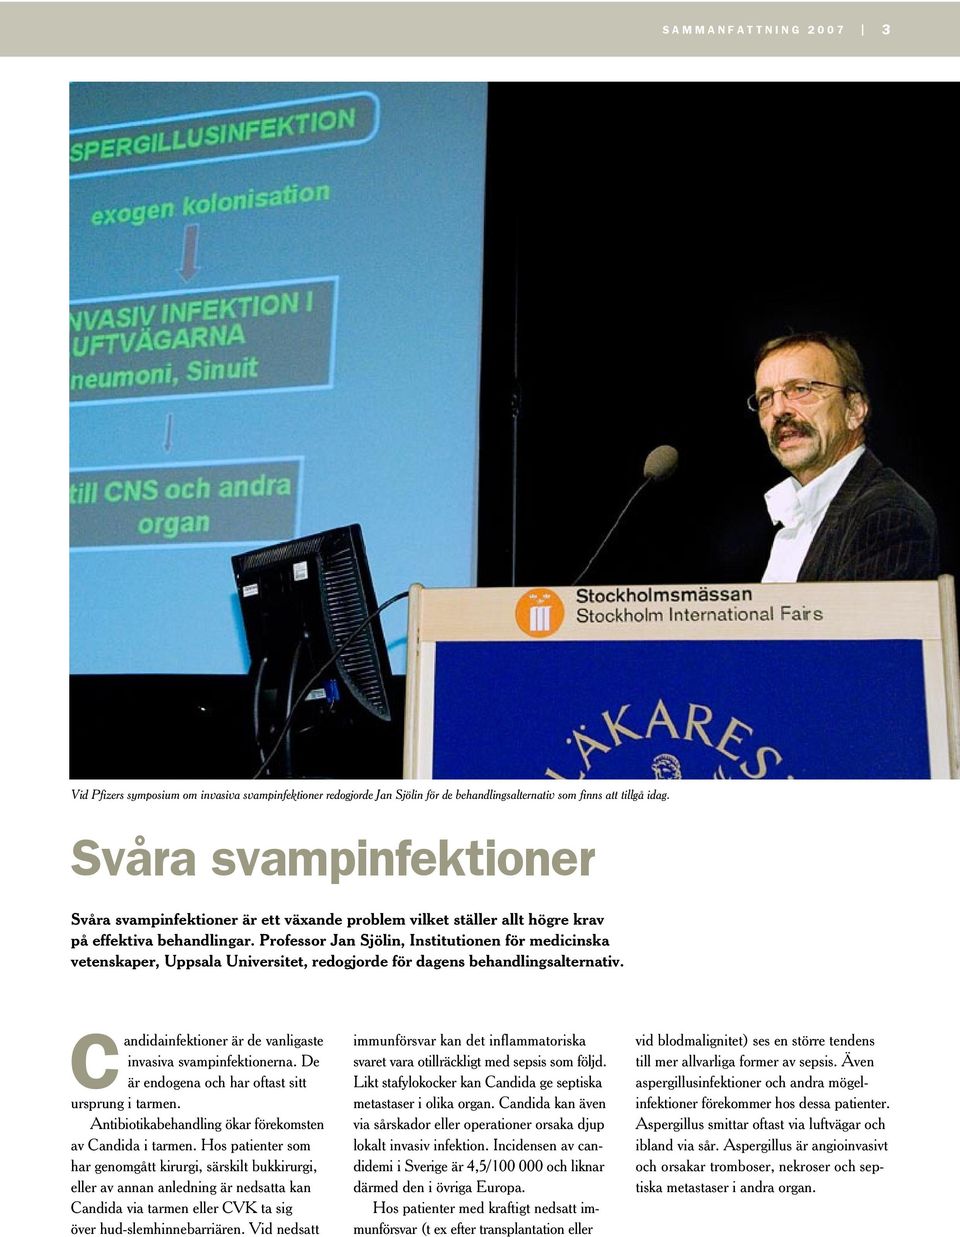 Professor Jan Sjölin, Institutionen för medicinska vetenskaper, Uppsala Universitet, redogjorde för dagens behandlingsalternativ. Candidainfektioner är de vanligaste invasiva svampinfektionerna.